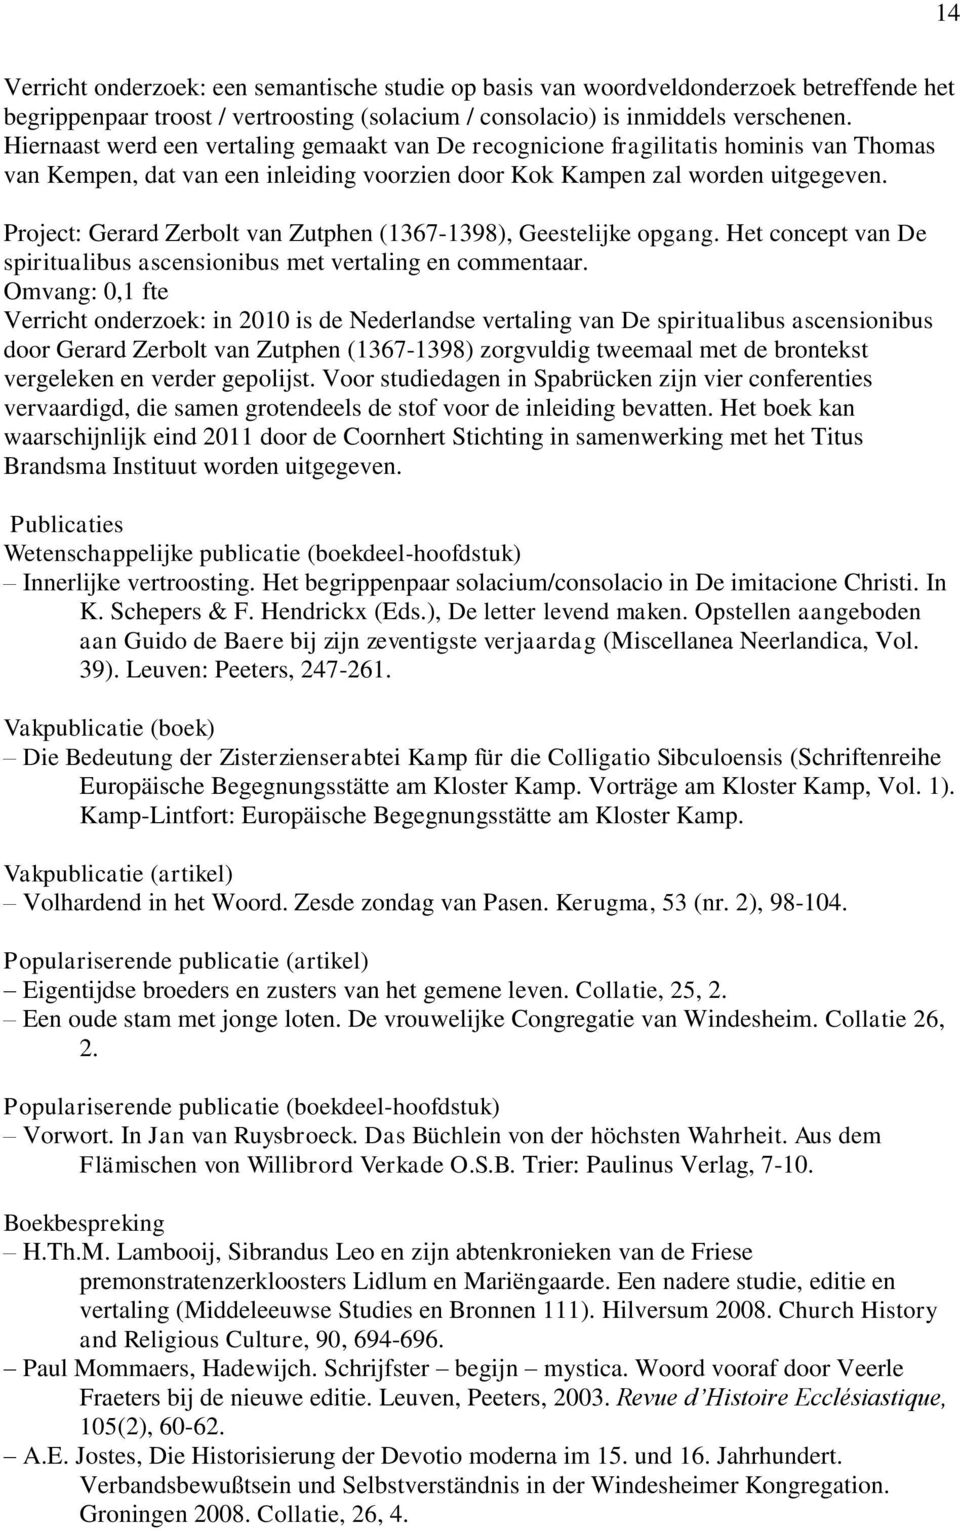 Project: Gerard Zerbolt van Zutphen (1367-1398), Geestelijke opgang. Het concept van De spiritualibus ascensionibus met vertaling en commentaar.